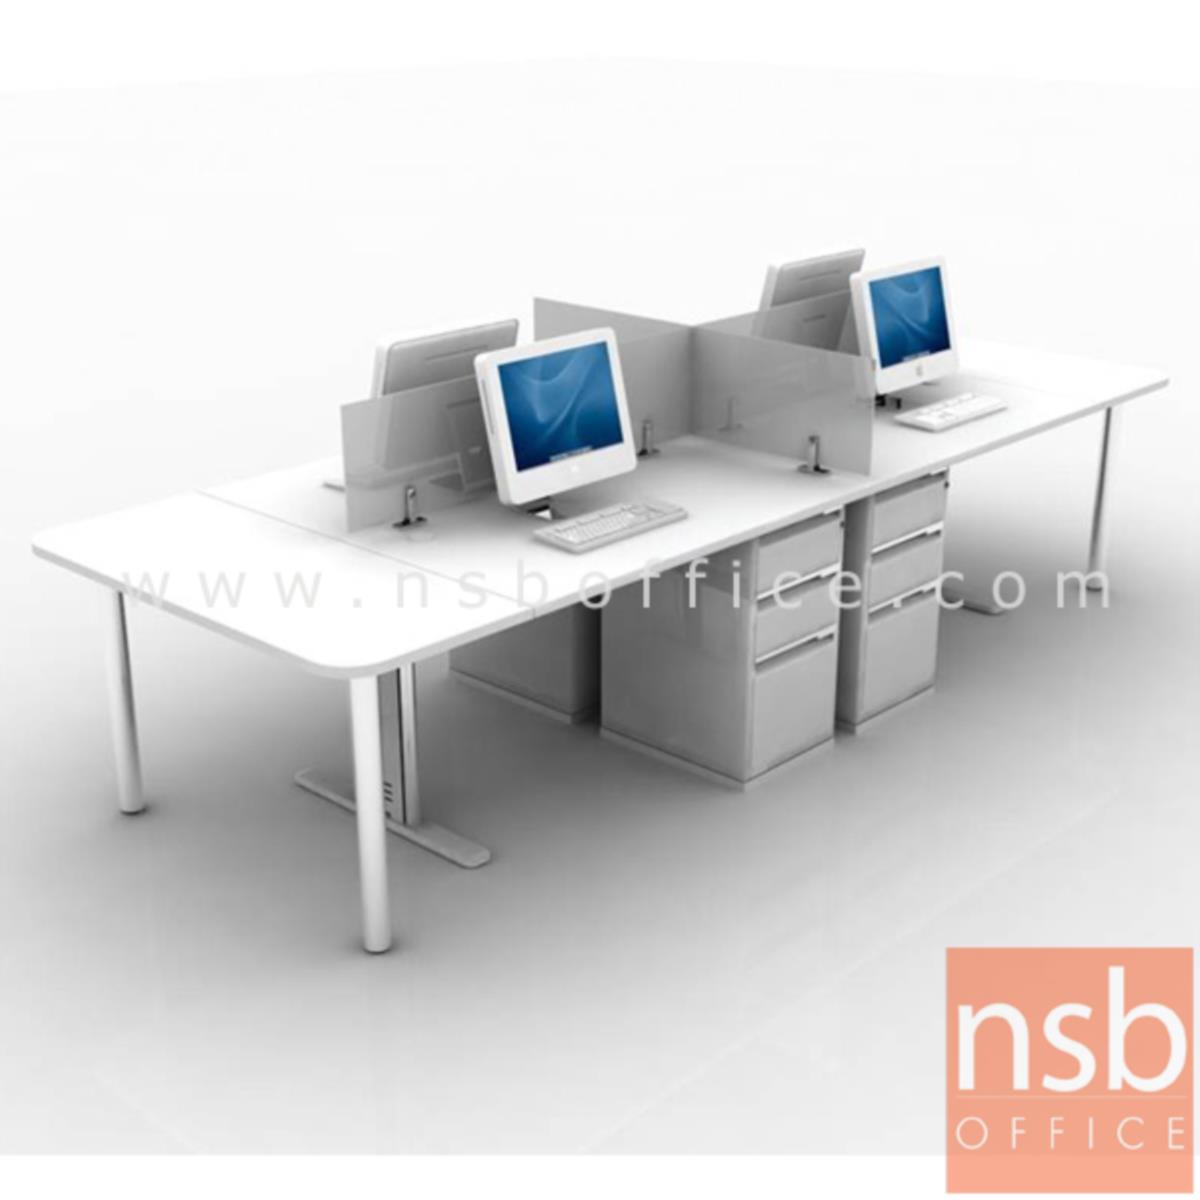 ชุดโต๊ะทำงานกลุ่ม 4 ที่นั่ง  รุ่น WS024G  ขนาด 240W ,360W cm. พร้อมมินิสกรีนกระจกและลิ้นชัก ขาเหล็ก